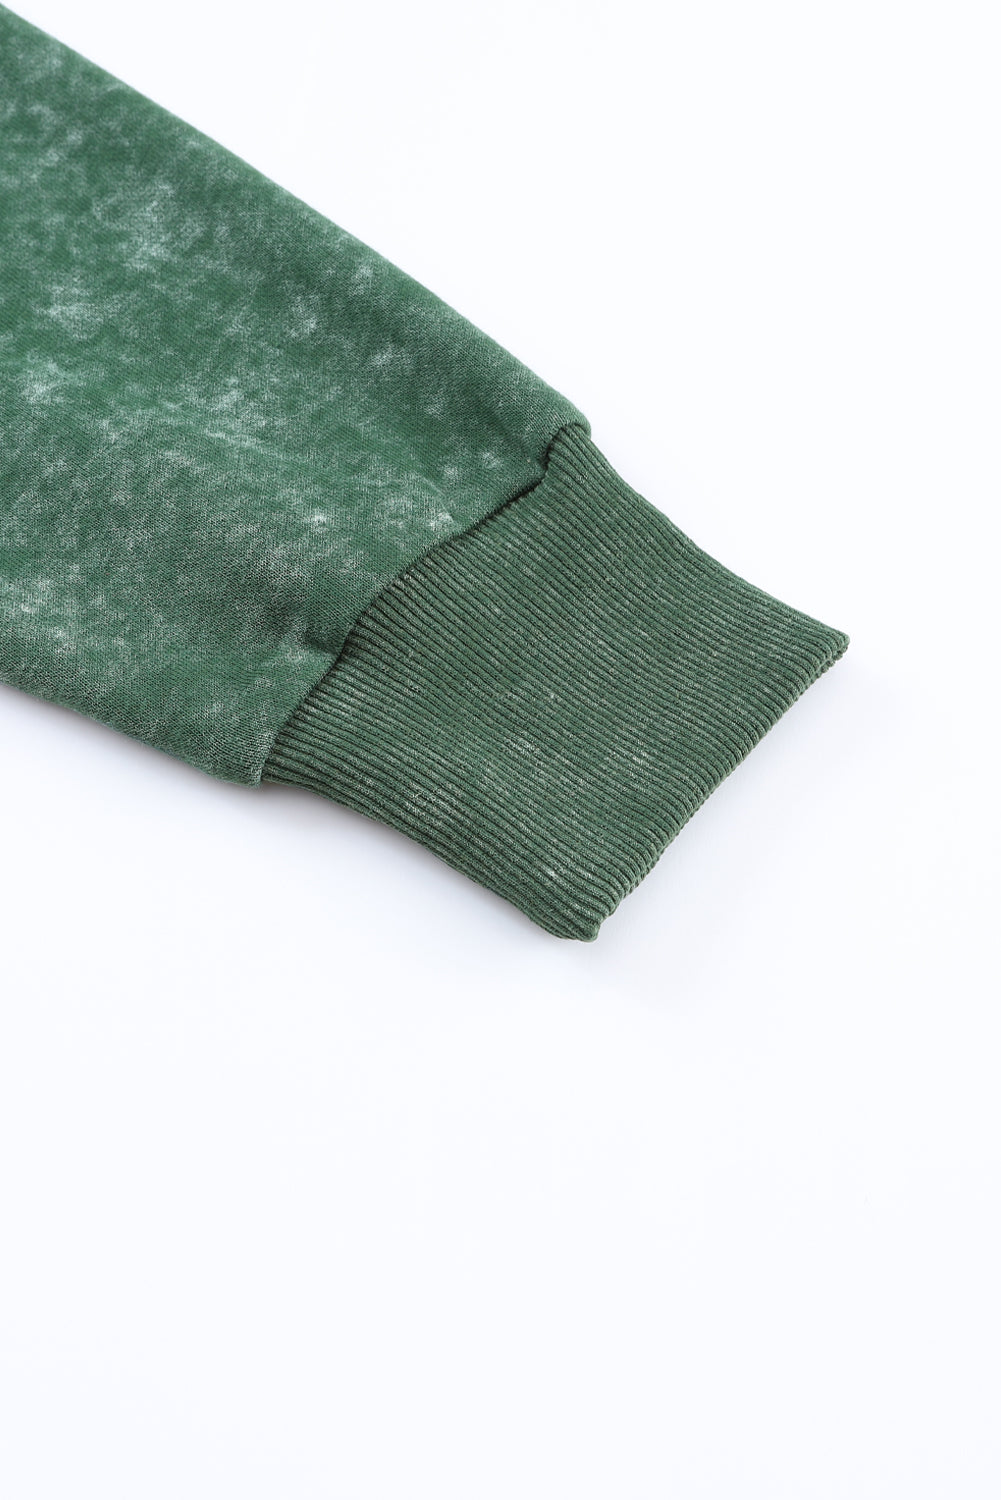 Veste boutonnée verte vintage délavée avec poche à rabat